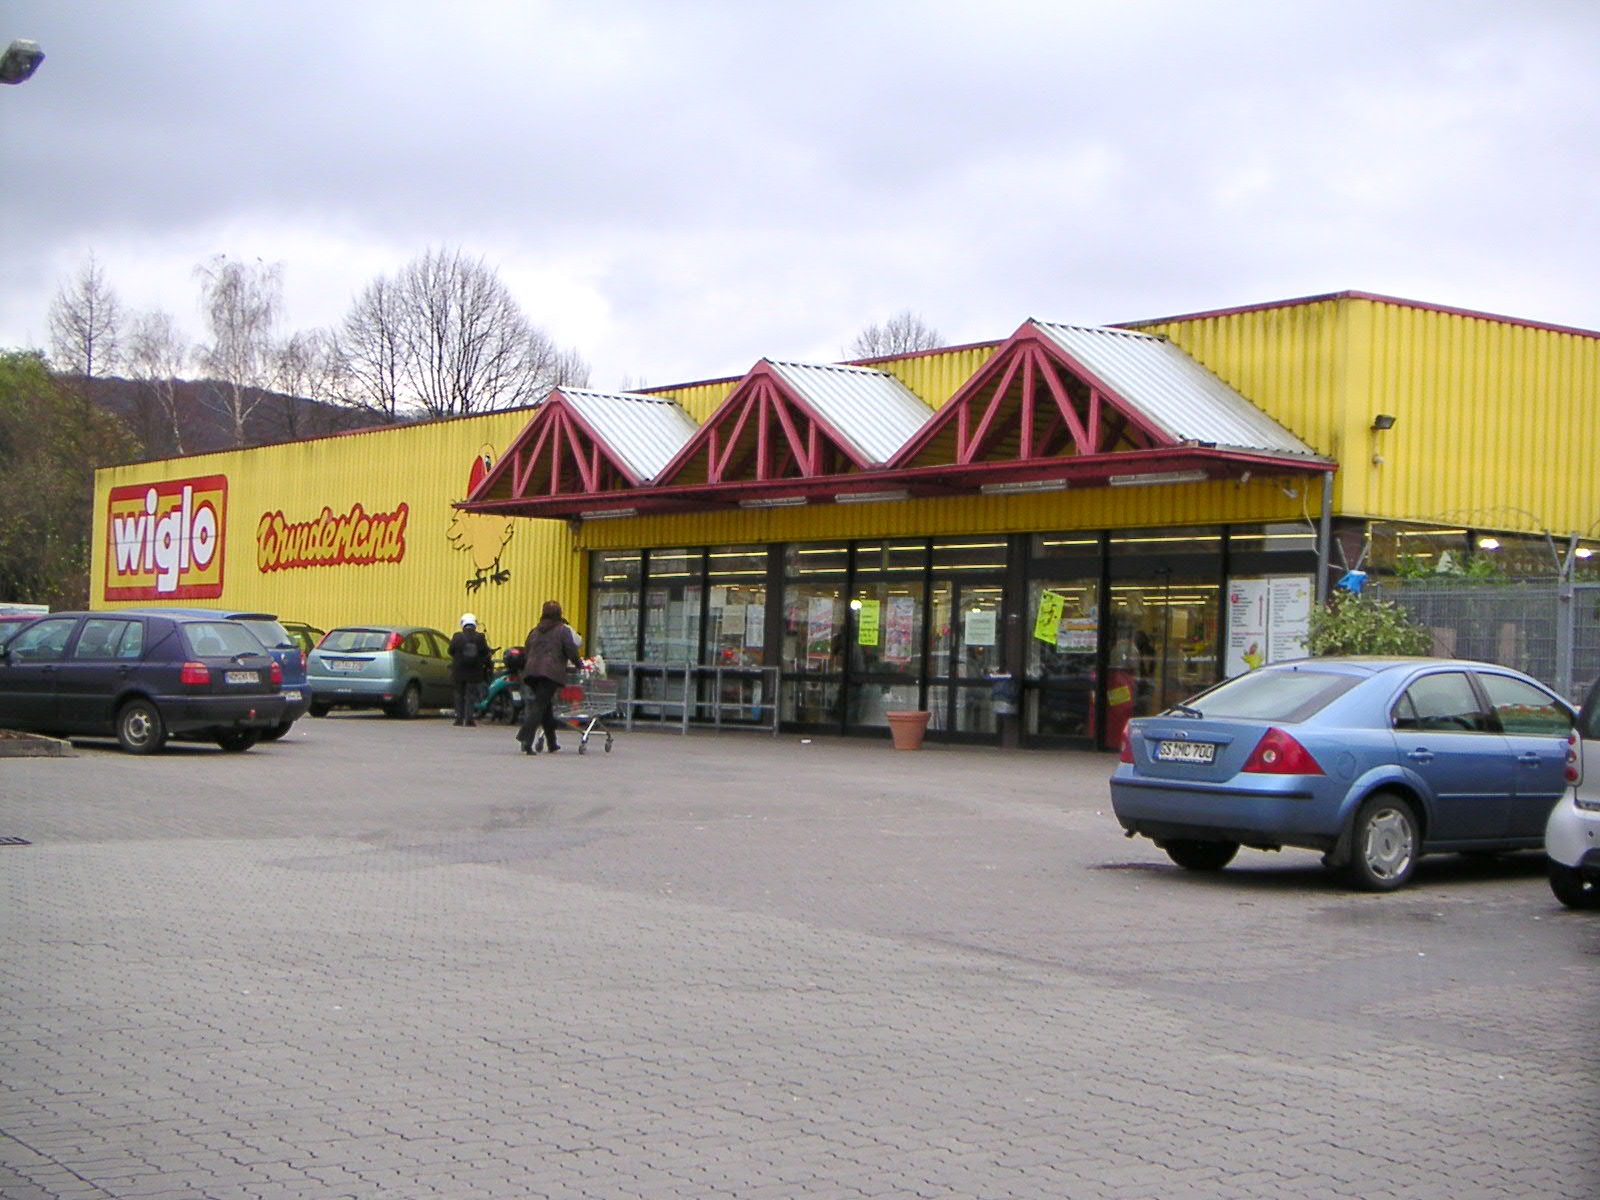 Sonderpostenmarkt Wiglo Wunderland Northeim